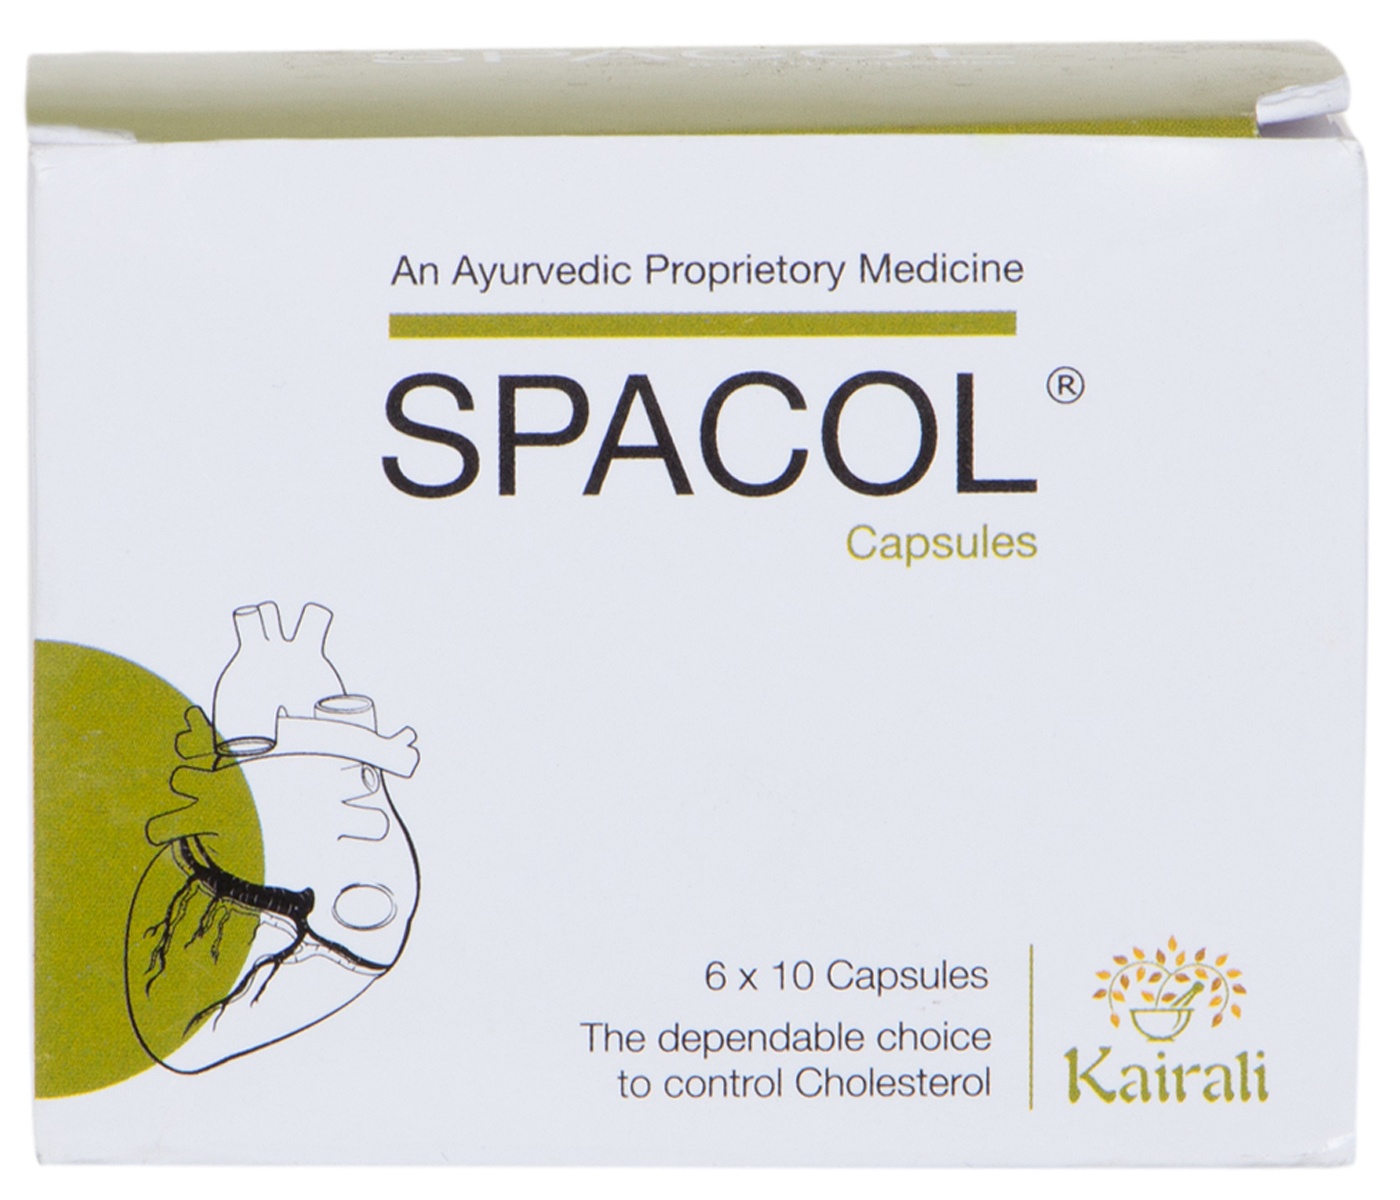 Buy Kairali Spacol Capsule at Best Price Online